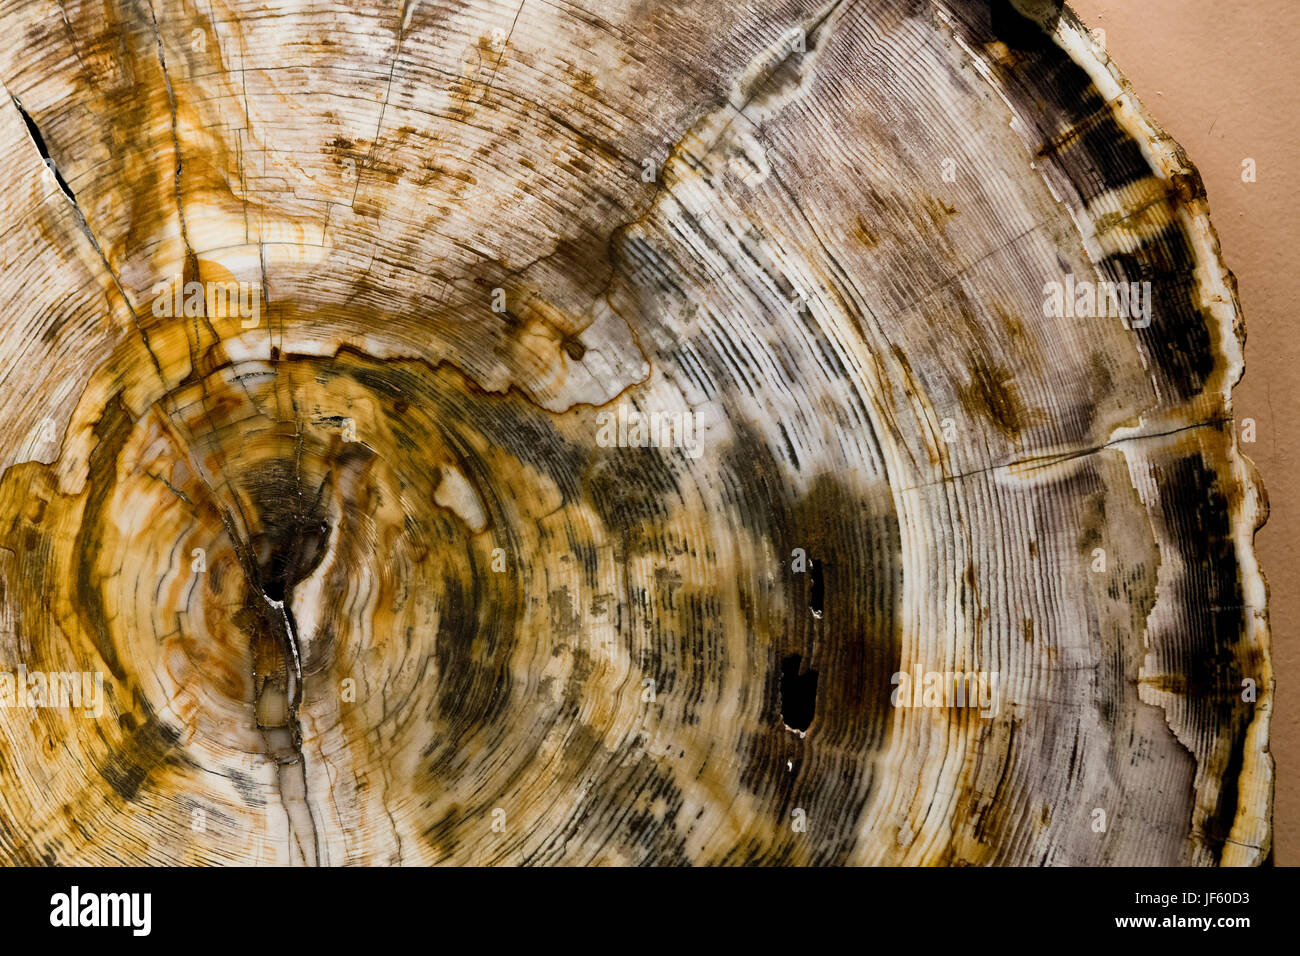 Cross-cut de petrified wood (bois fossile, tronc d'arbre fossilisé) montrant les anneaux de croissance des arbres (les anneaux de croissance) - USA Banque D'Images